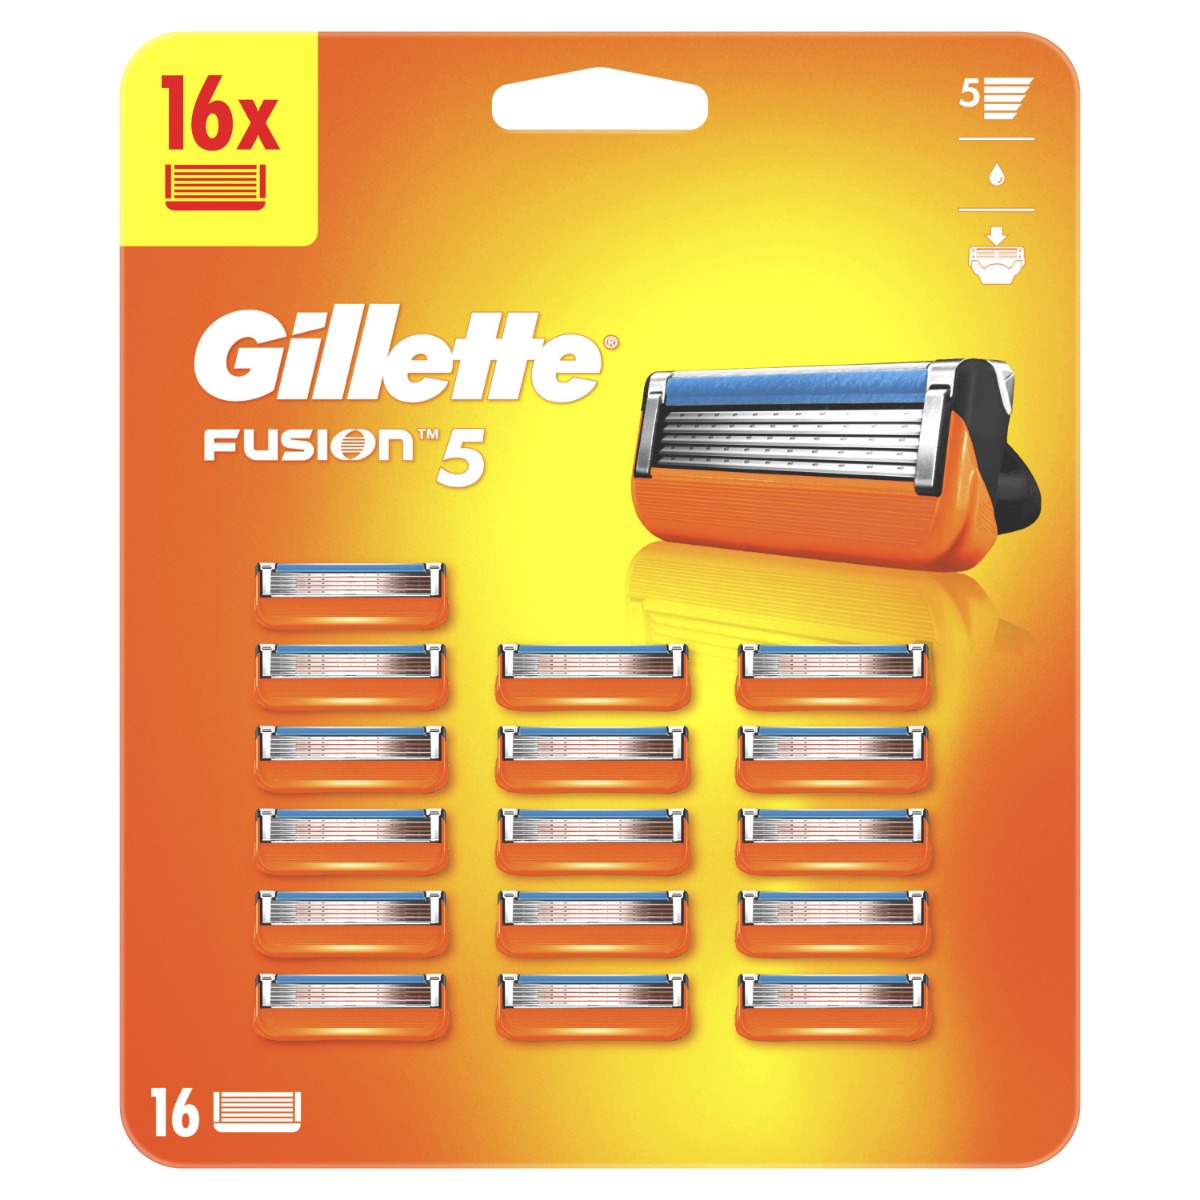 Gillette Fusion5 Manual náhradní hlavice 16 ks Gillette